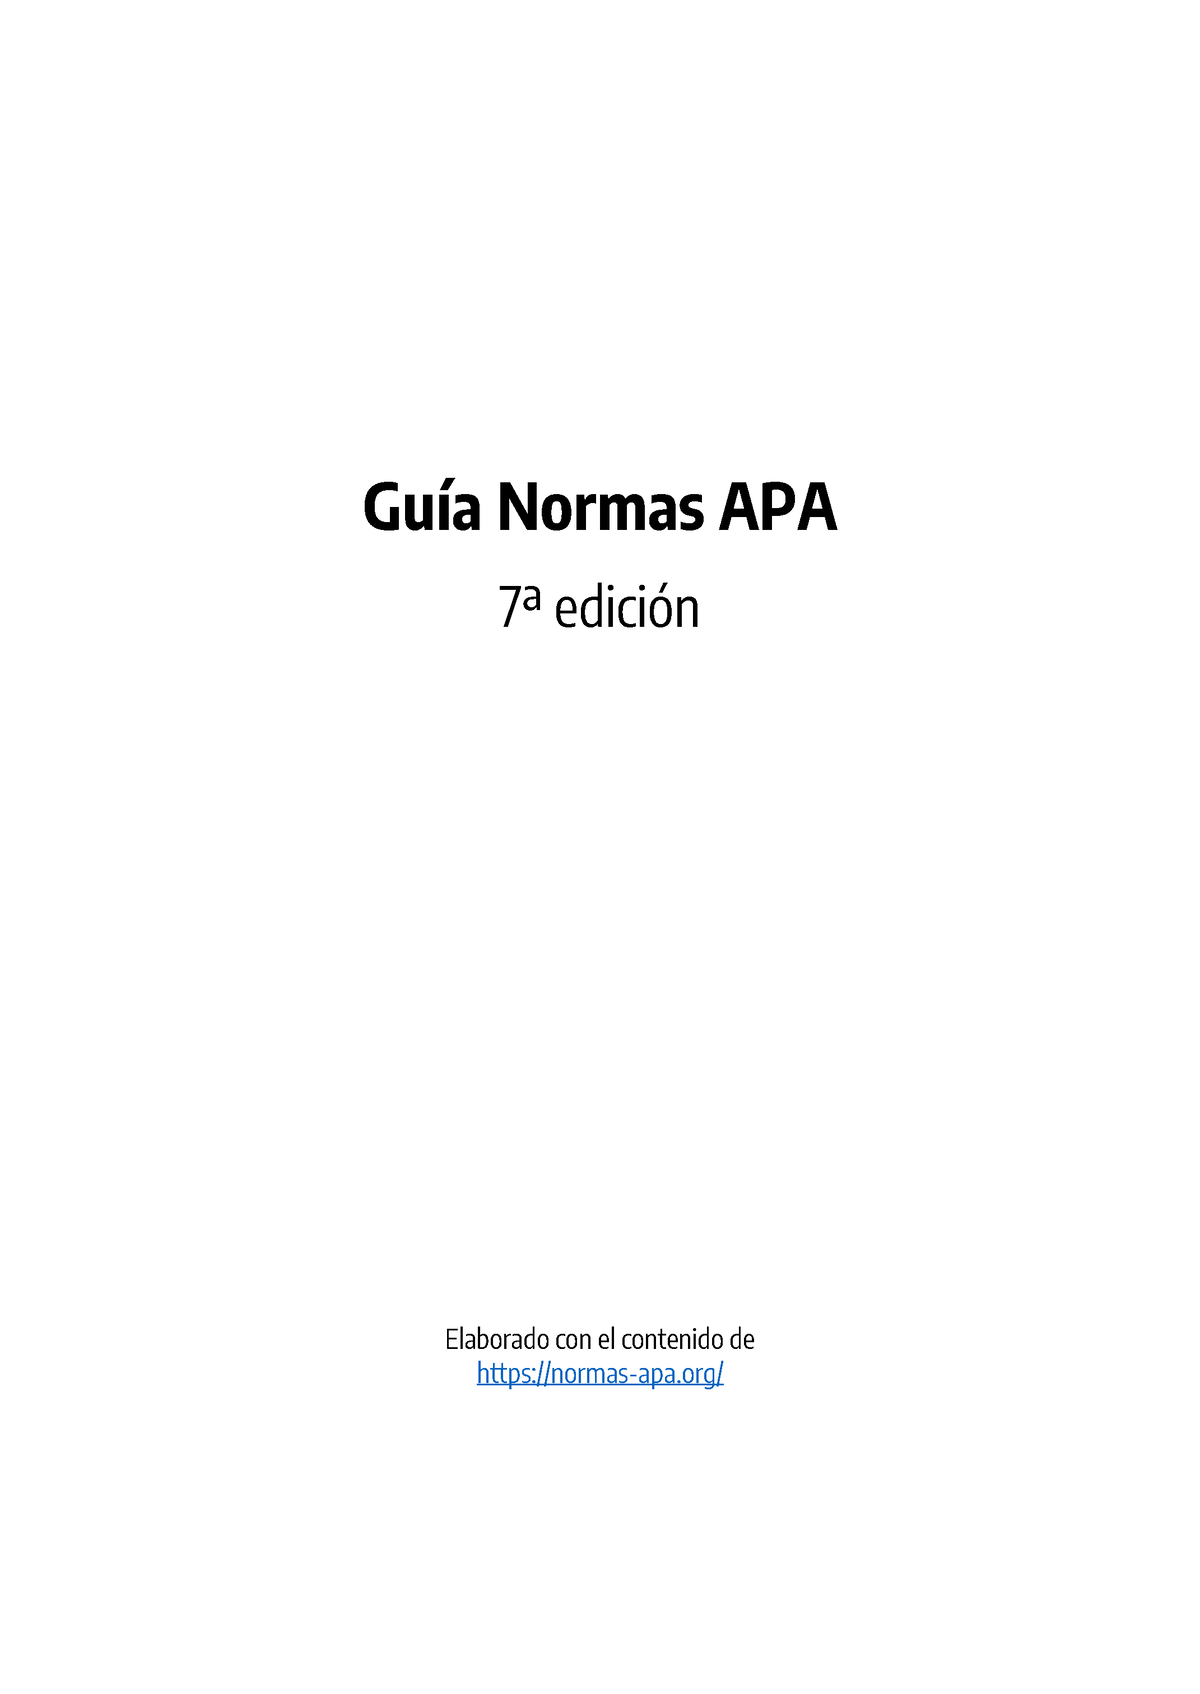 Guia Normas Apa 7ma Edicion Guía Normas Apa 7ª Edición Elaborado Con El Contenido De Normas 6574